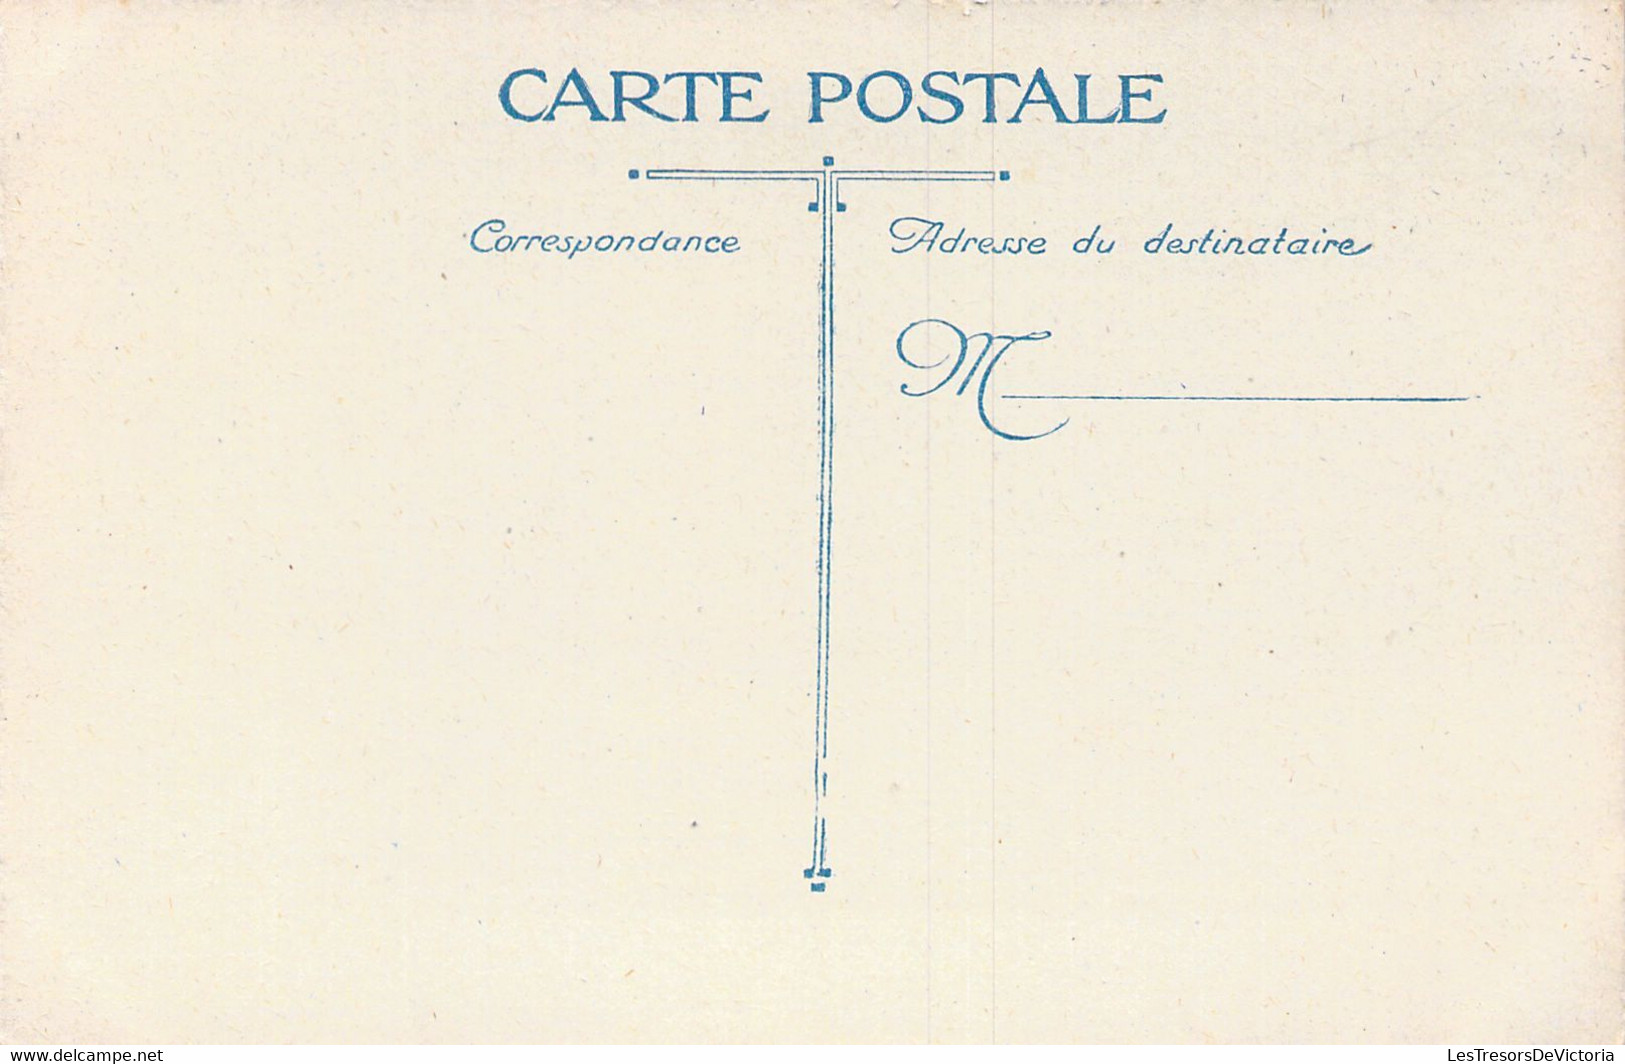 MARCHES - TOULON - Le Marché - Cours Lafayette - Carte Postale Ancienne - Marktplaatsen